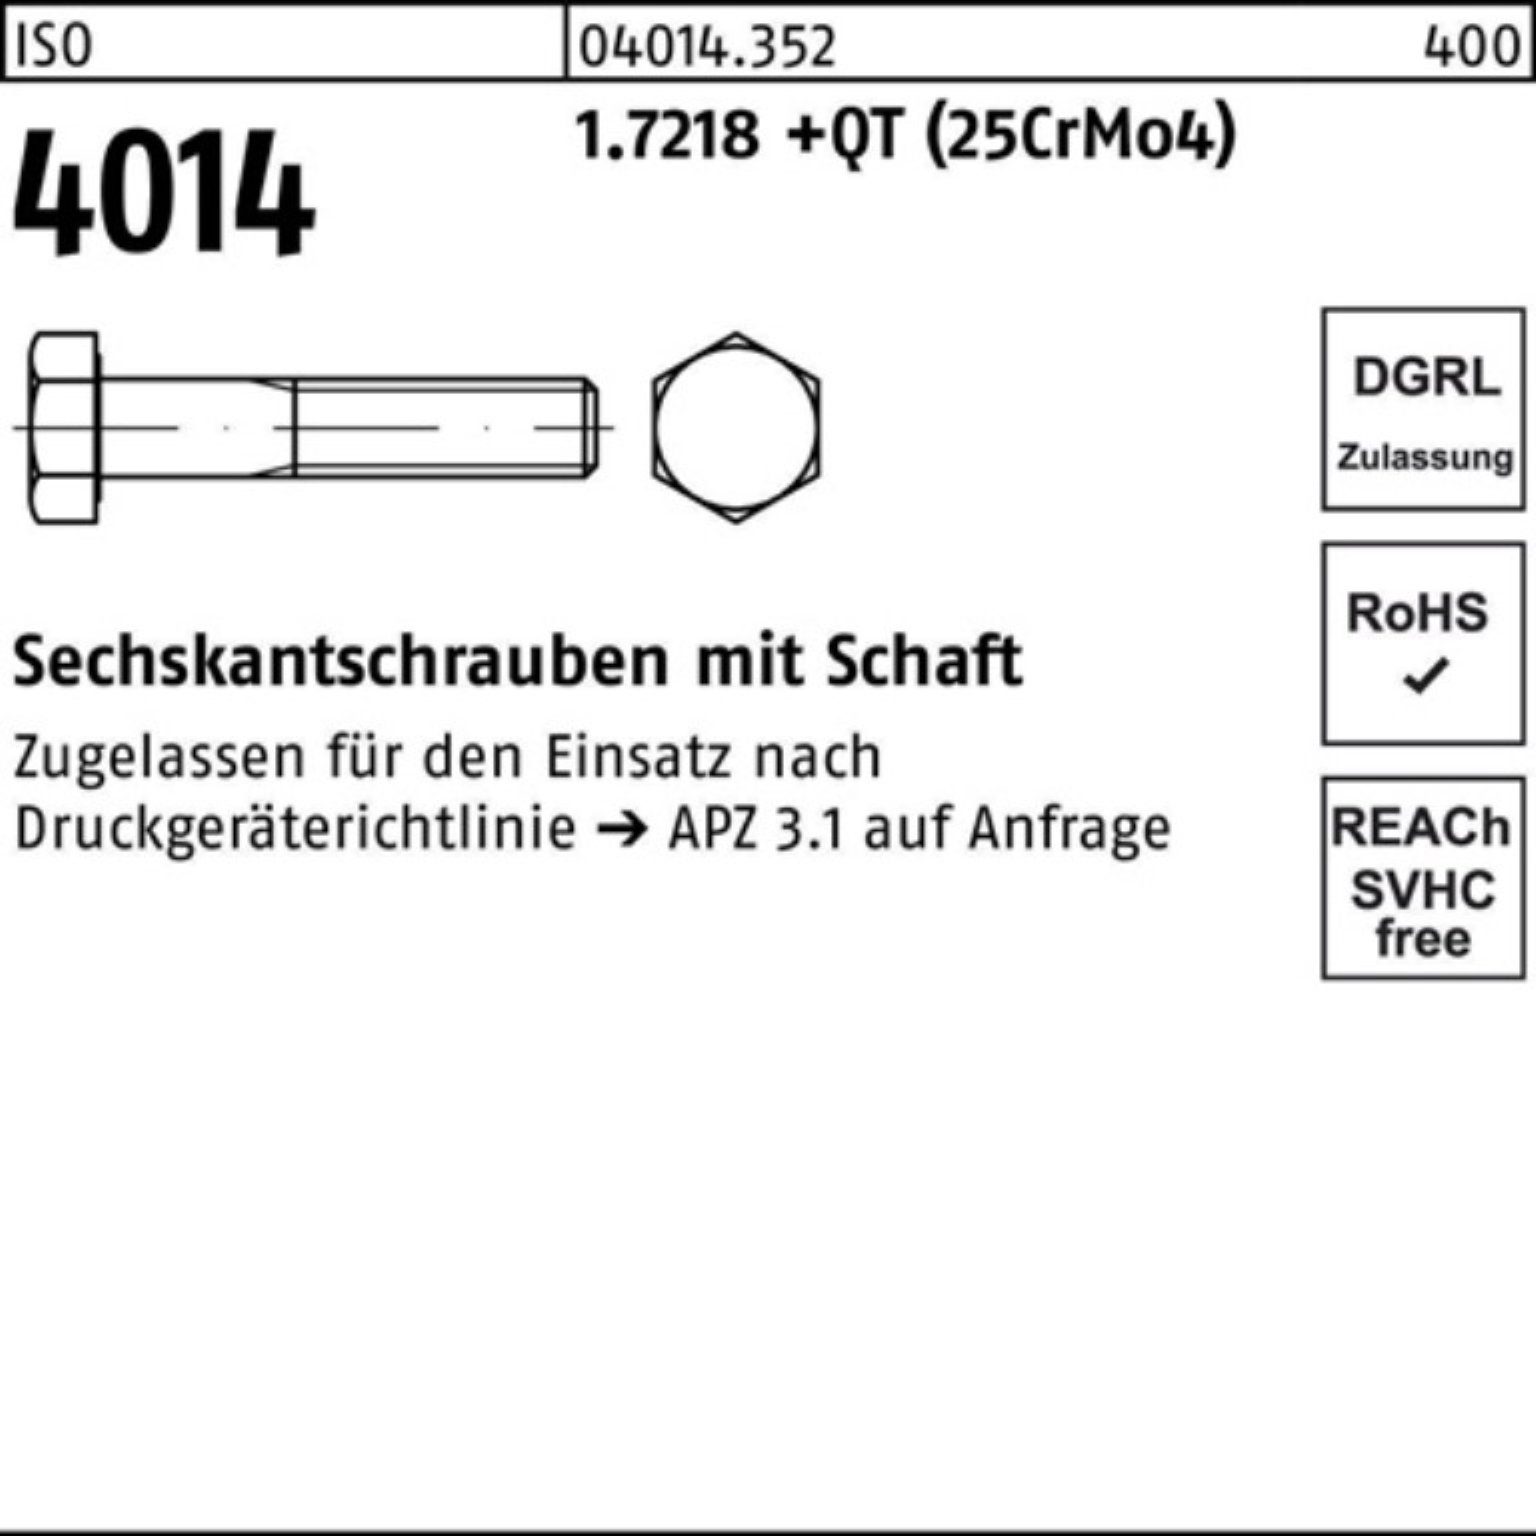 Sechskantschraube Pack 4014 160 Sechskantschraube Schaft 100er ISO Bufab +QT M39x 1.7218 (25Cr